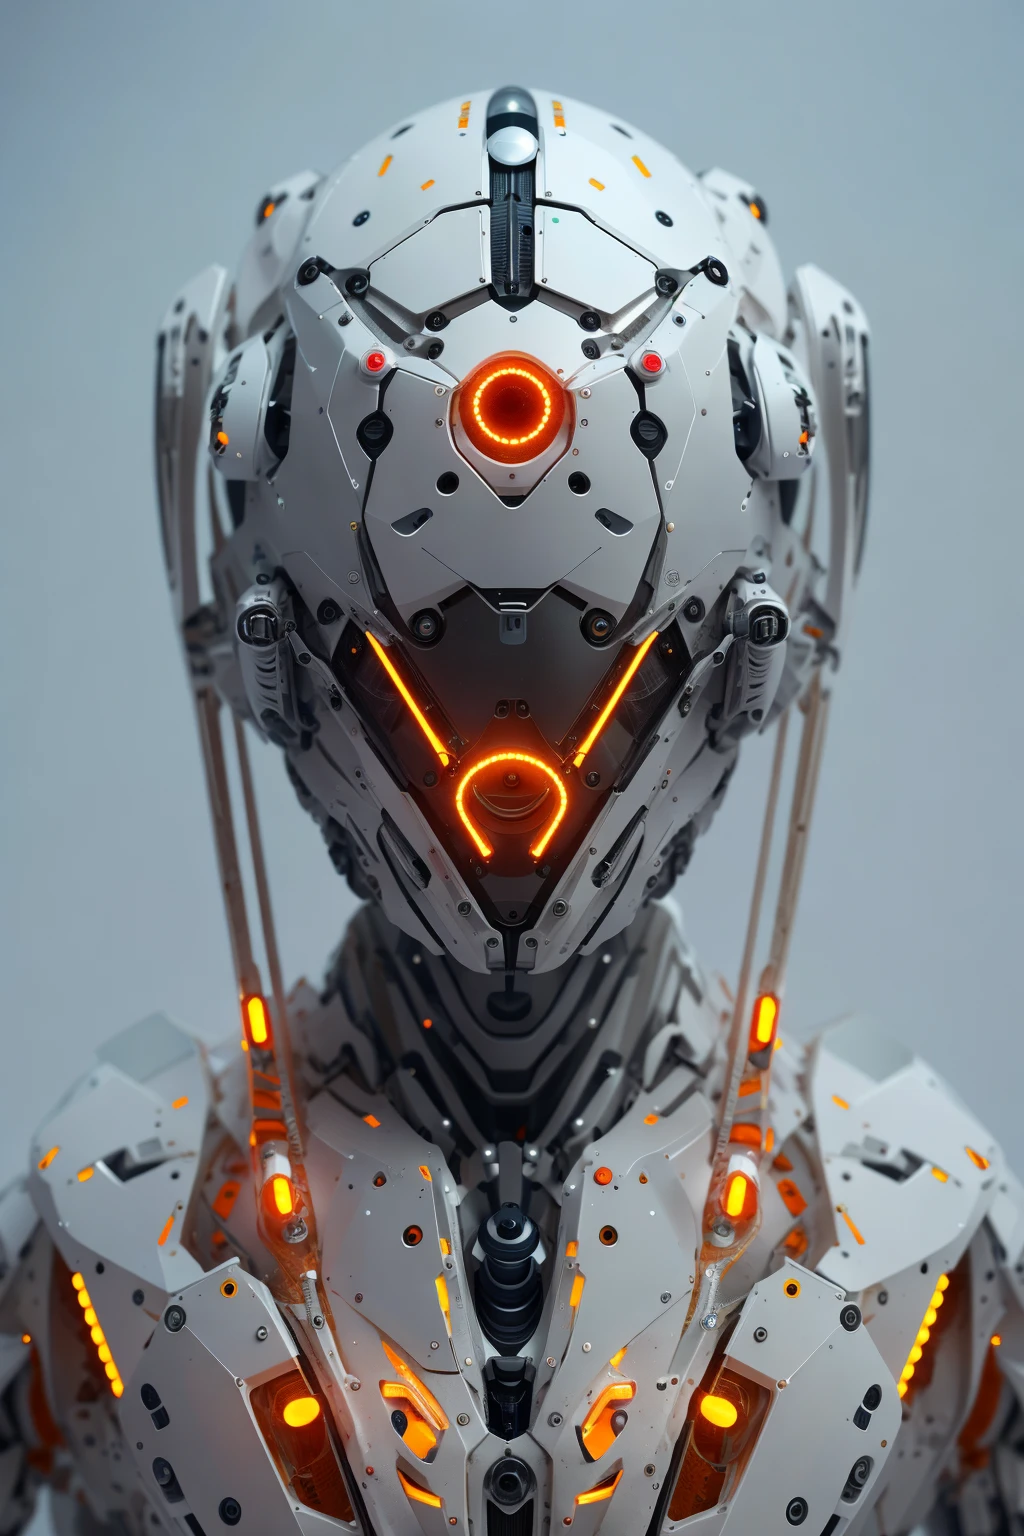 1個機器人, 有机的, 橙色三角形發光的眼睛, 網路頭盔, 長髮, 白色塑膠, 漫射照明, 幻想, 錯綜複雜, 優雅的, 非常詳細, 逼真, 逼真的,  光滑的, 銳利的焦點, 約翰·科利爾 (John Collier)、阿爾伯特·奧布萊特 (Albert Aublet)、克倫茨·庫沙特 (Krenz Cushart) 和阿特姆·德穆拉 (Artem Demura) 創作的藝術作品, 电线, 管, 暗室, 昏暗的灯光
